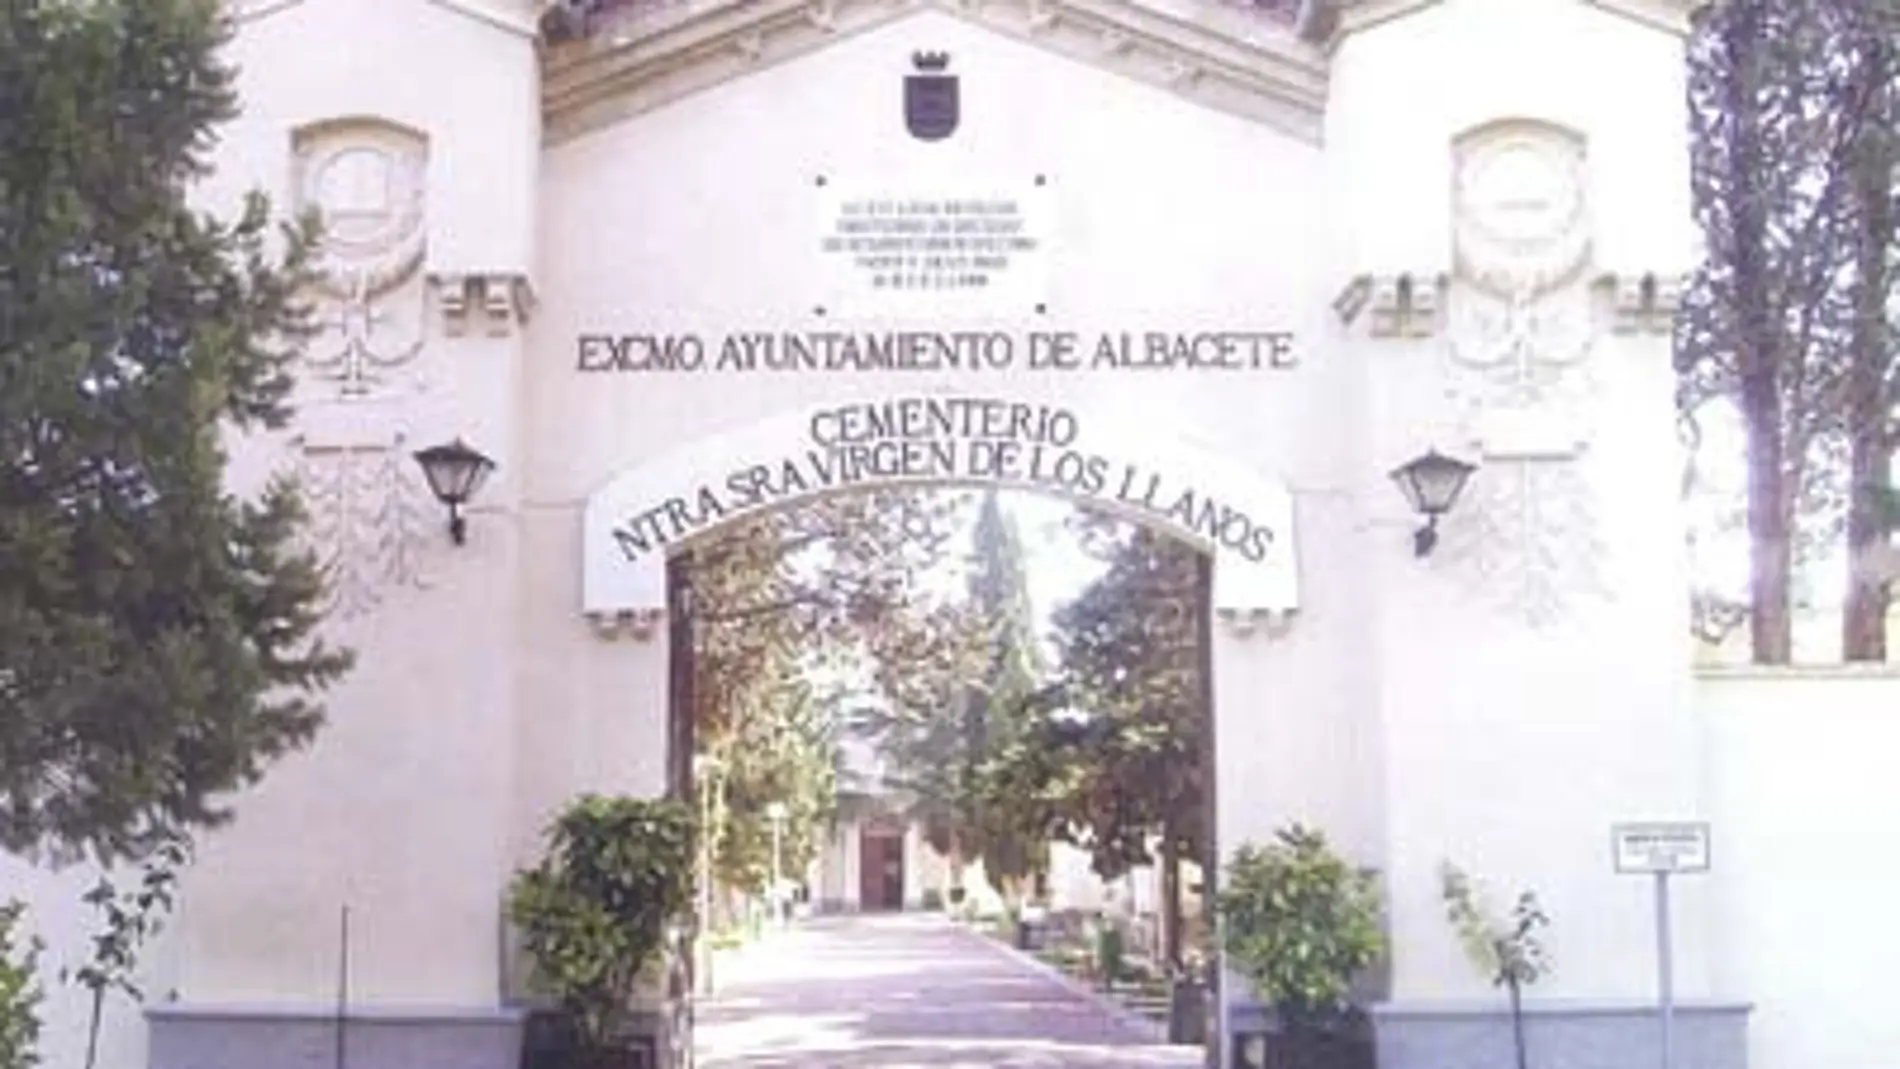 Cementerio de Albacete